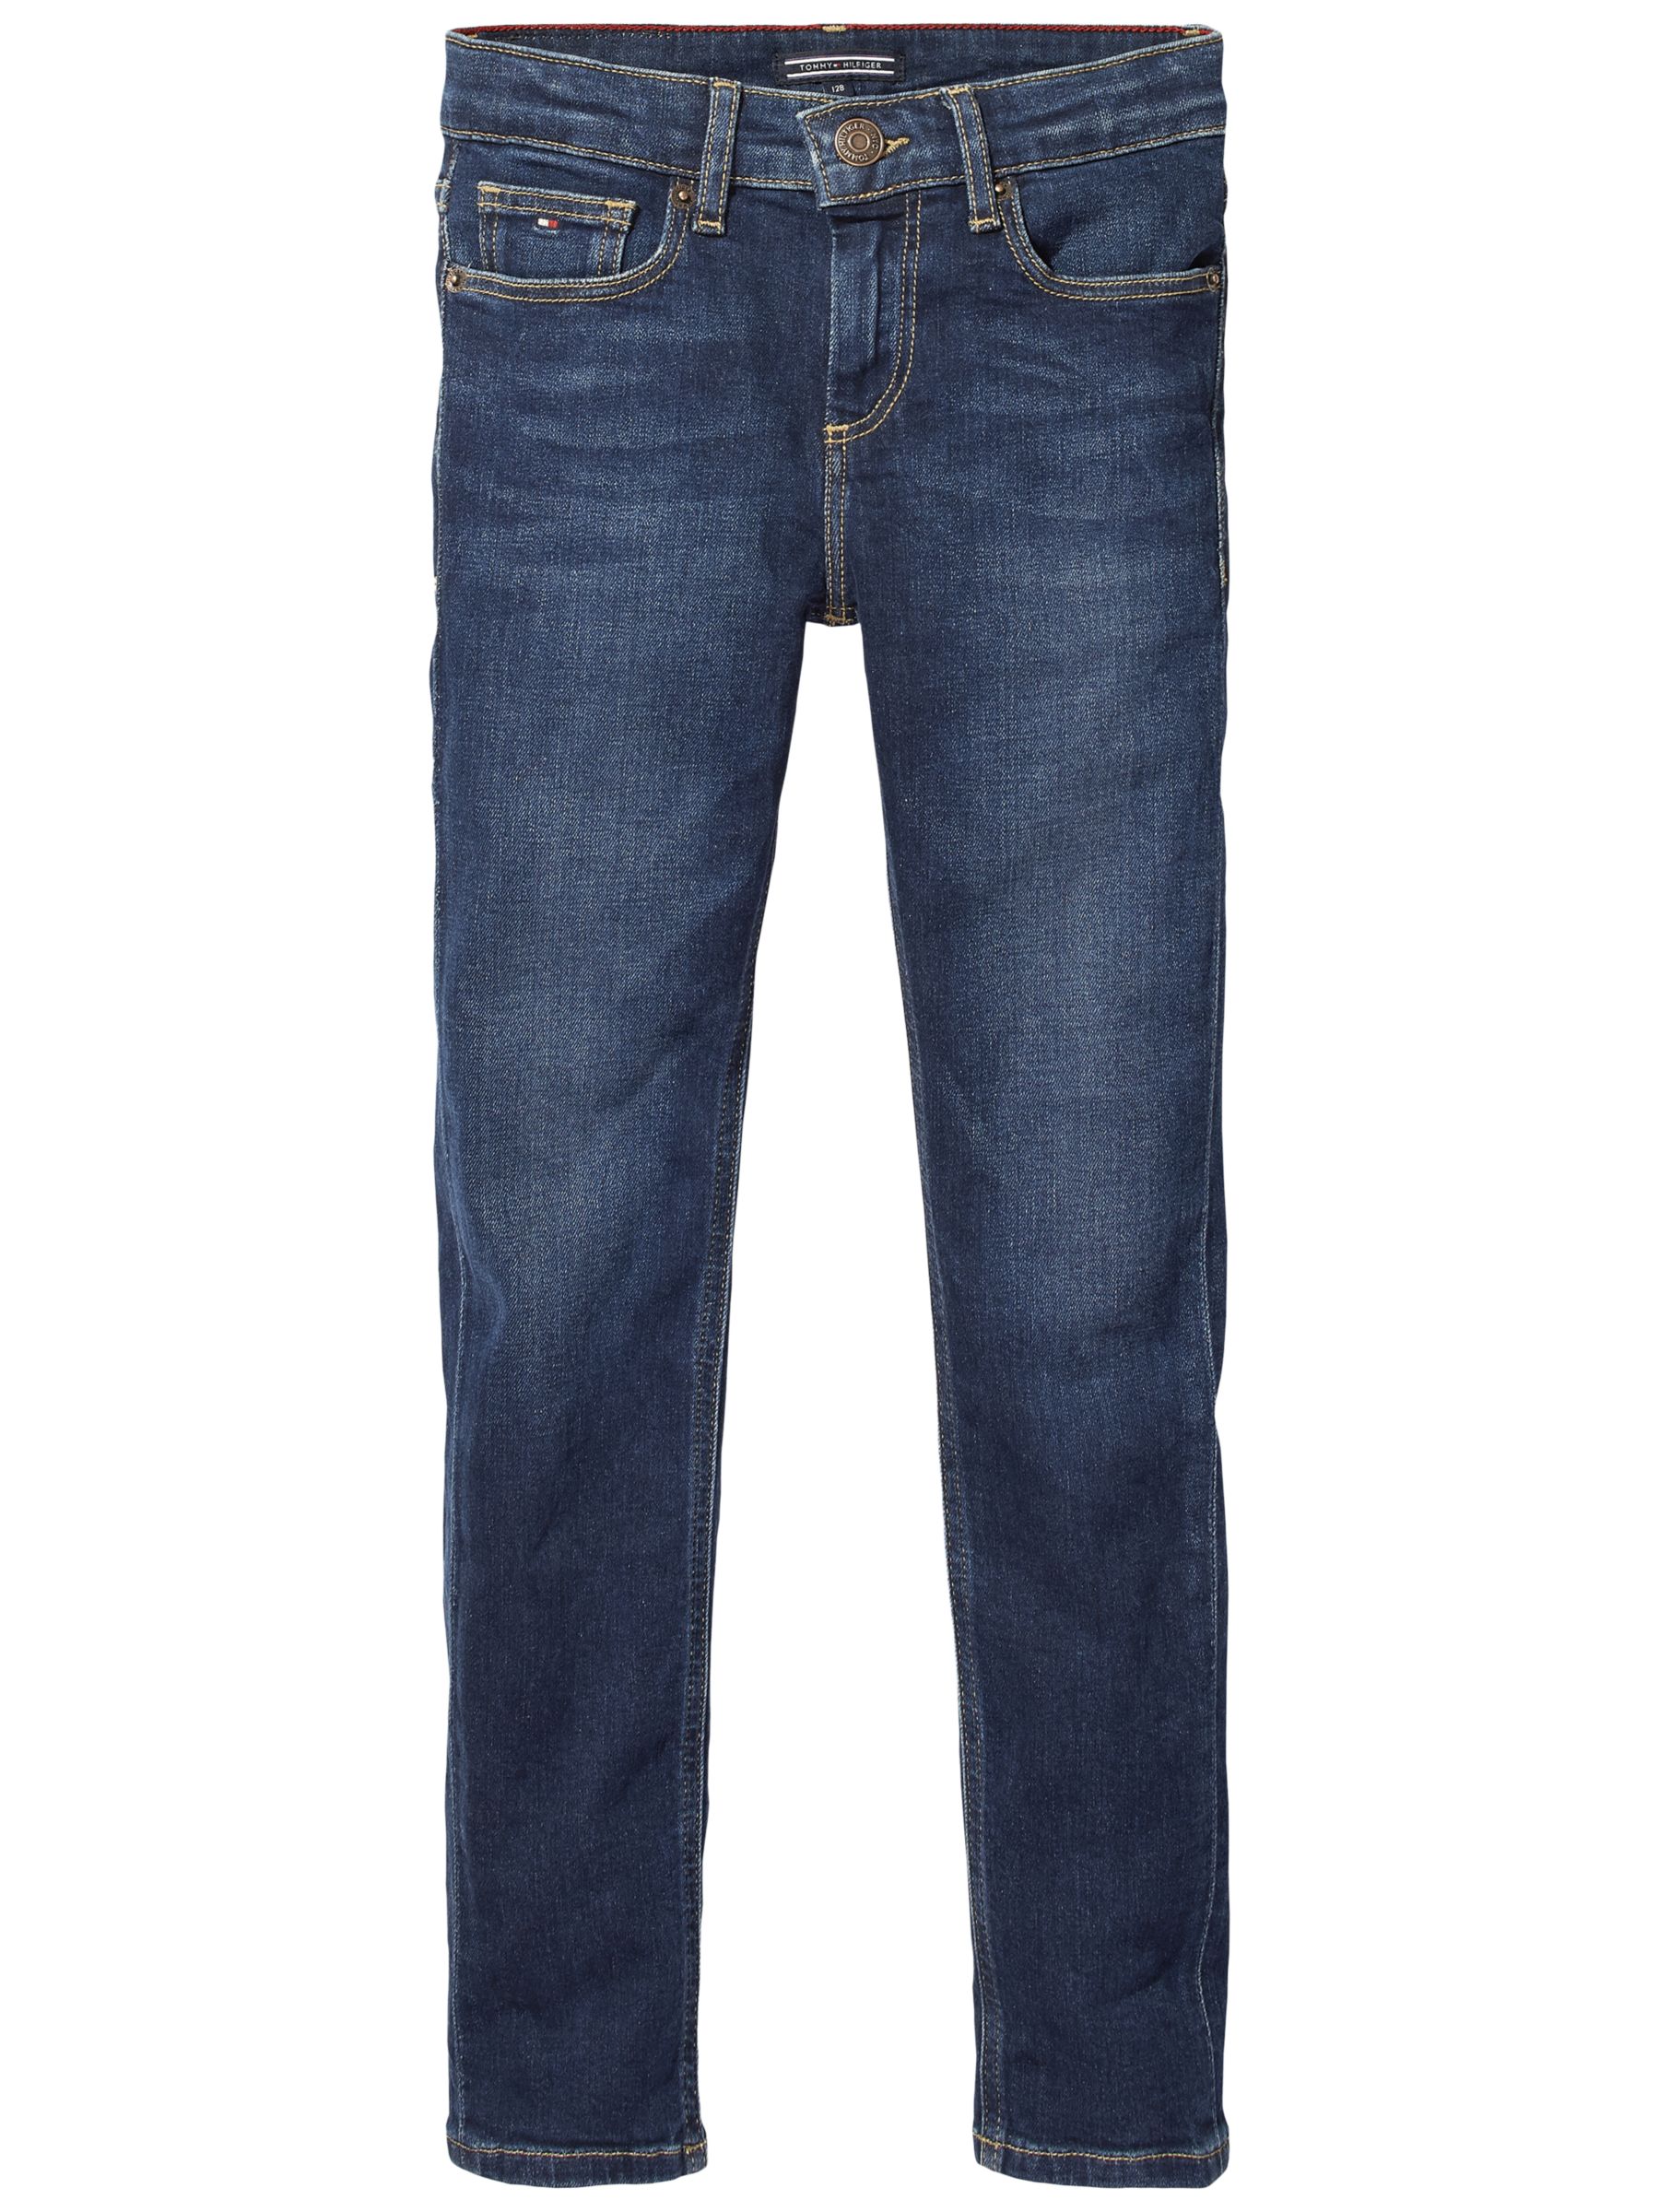 tommy hilfiger jeans online